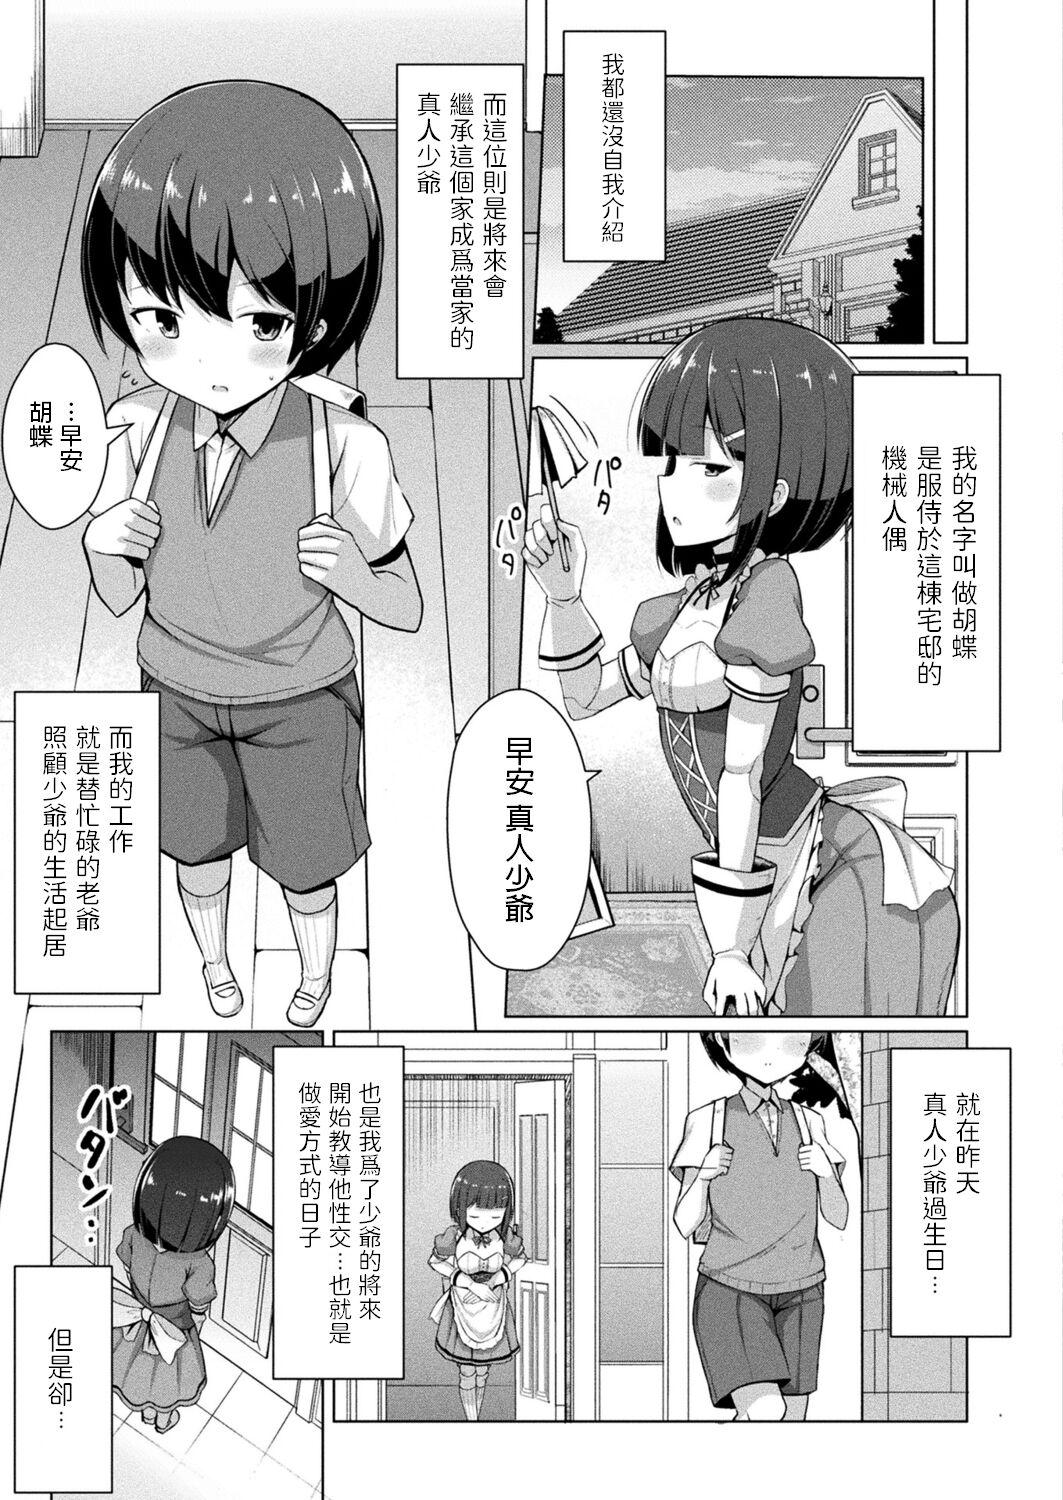 Bitch Kochou-san no Yume? Linda - Page 3